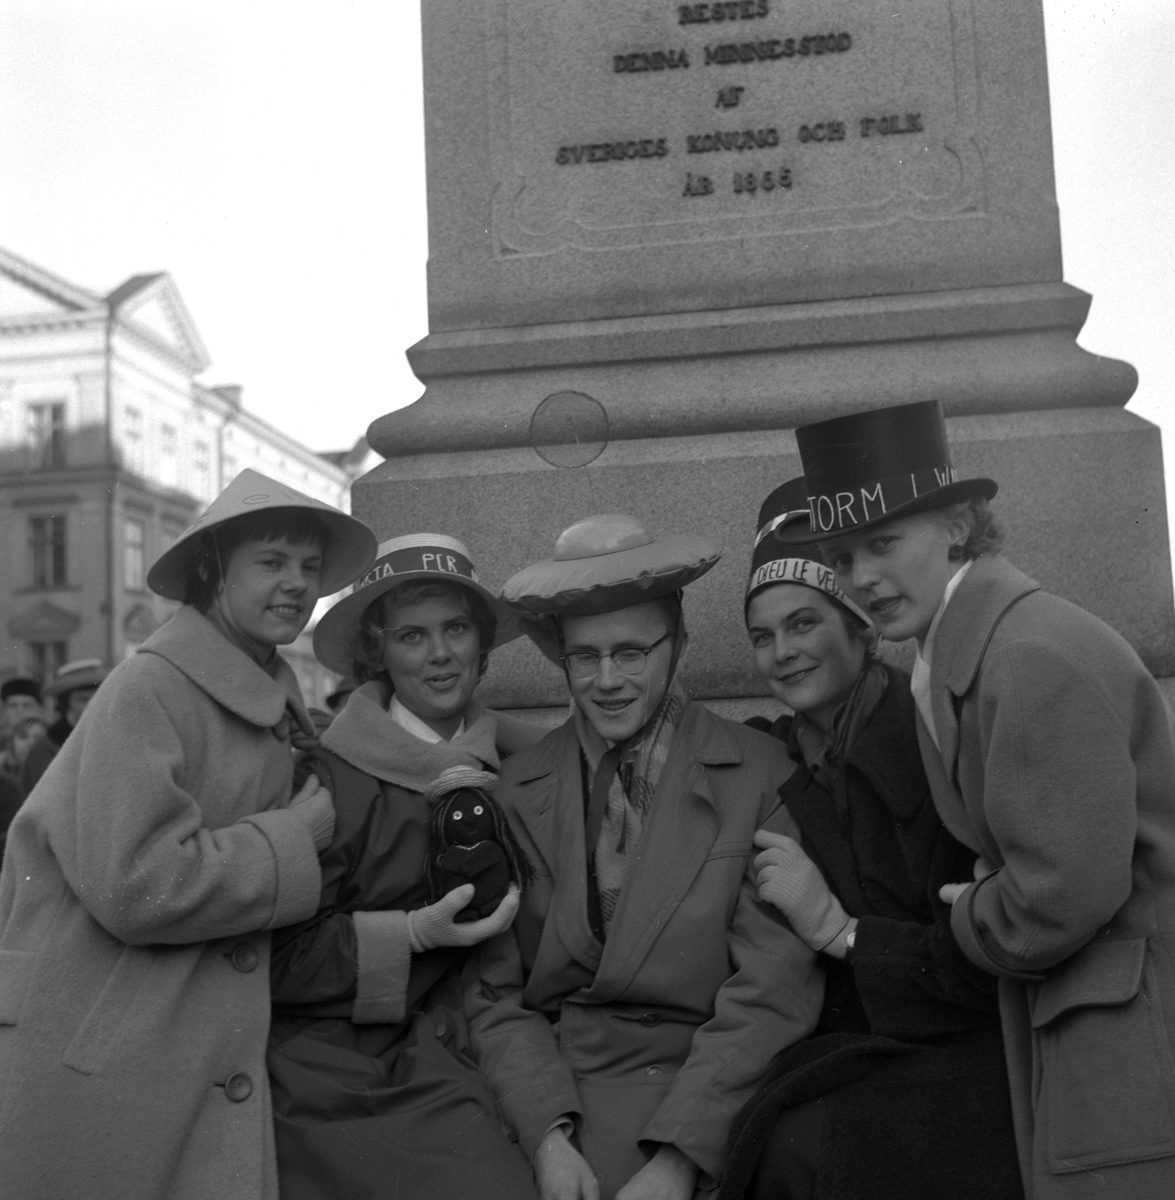 Studentspex vid Engelbrekt på Stortorget.
9 mars 1959.